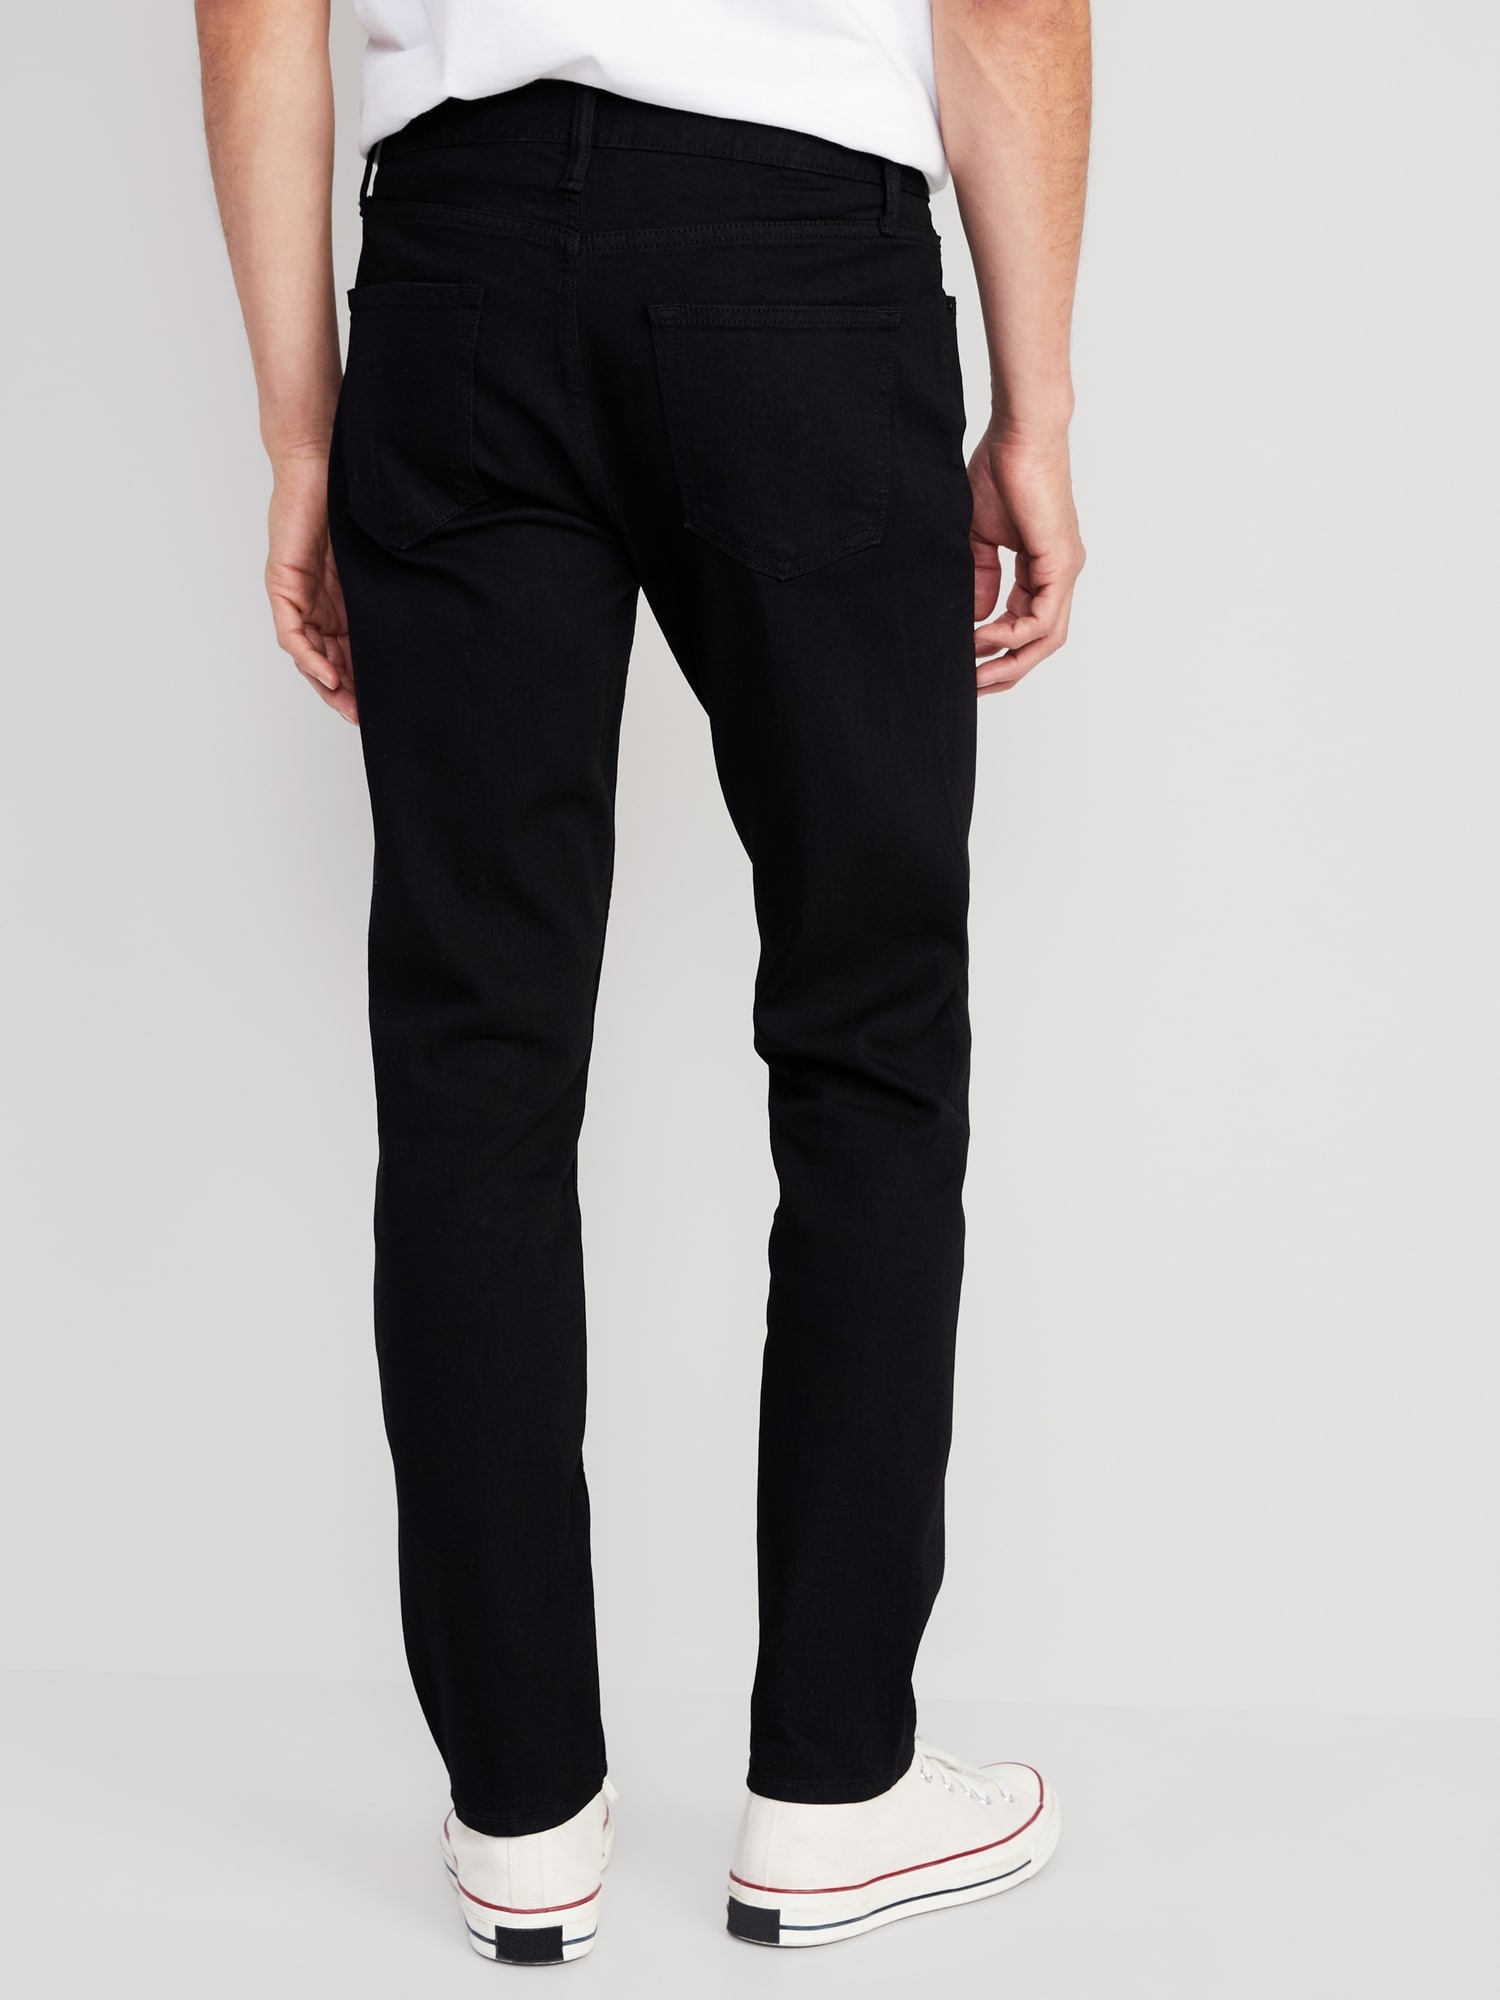 Relaxed Slim Taper Built-In Flex Black Jeans for Men | Old Navy